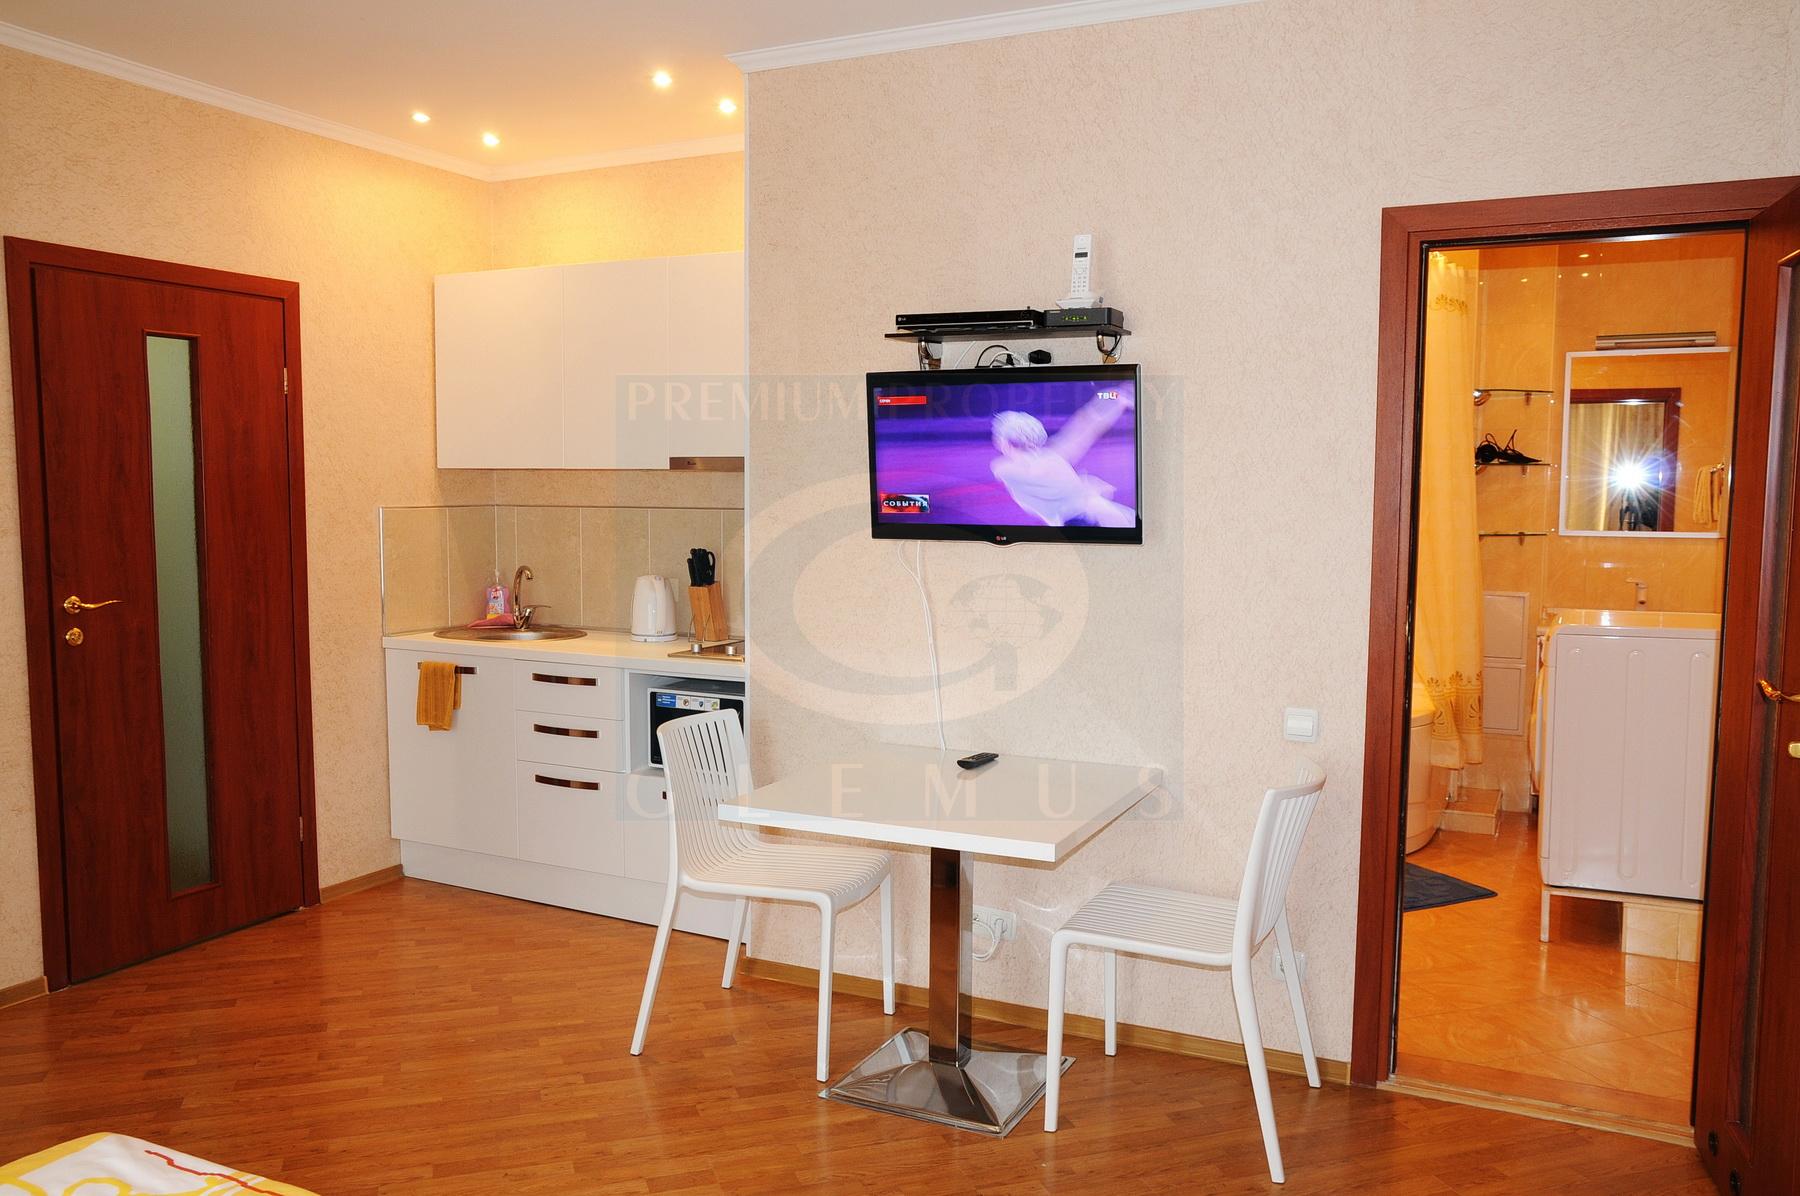 Rent Short Term Apartment In Chisinau